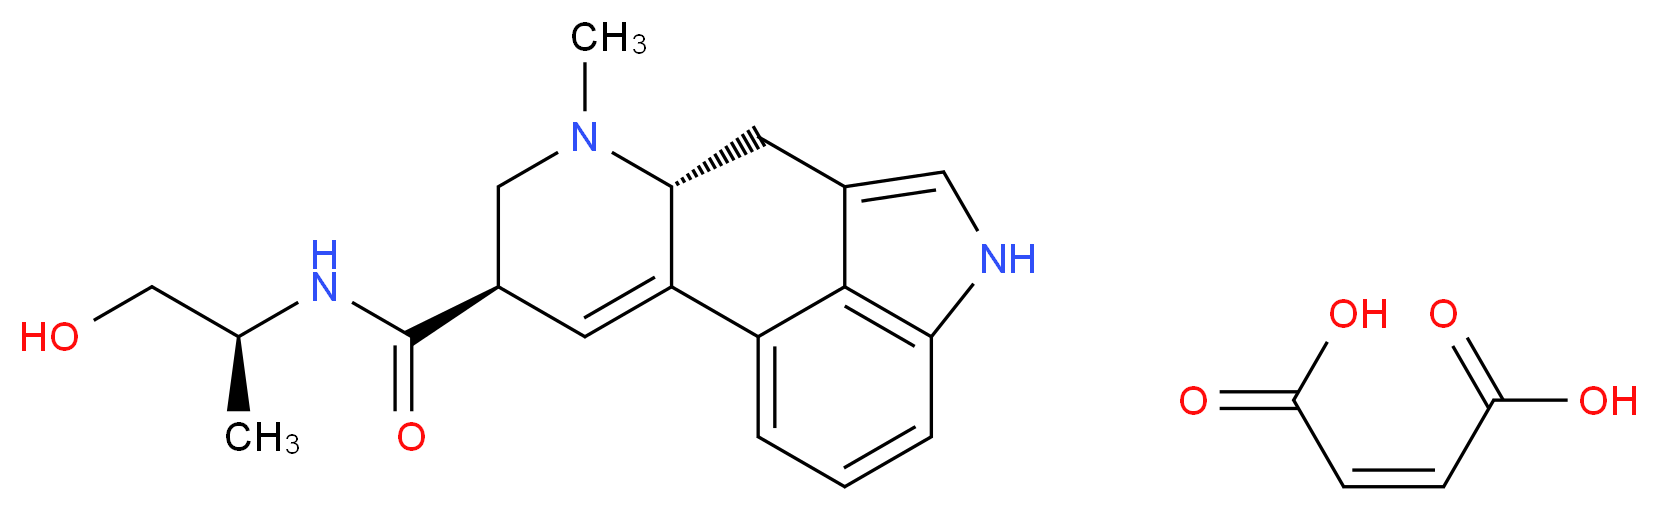 129-51-1 molecular structure